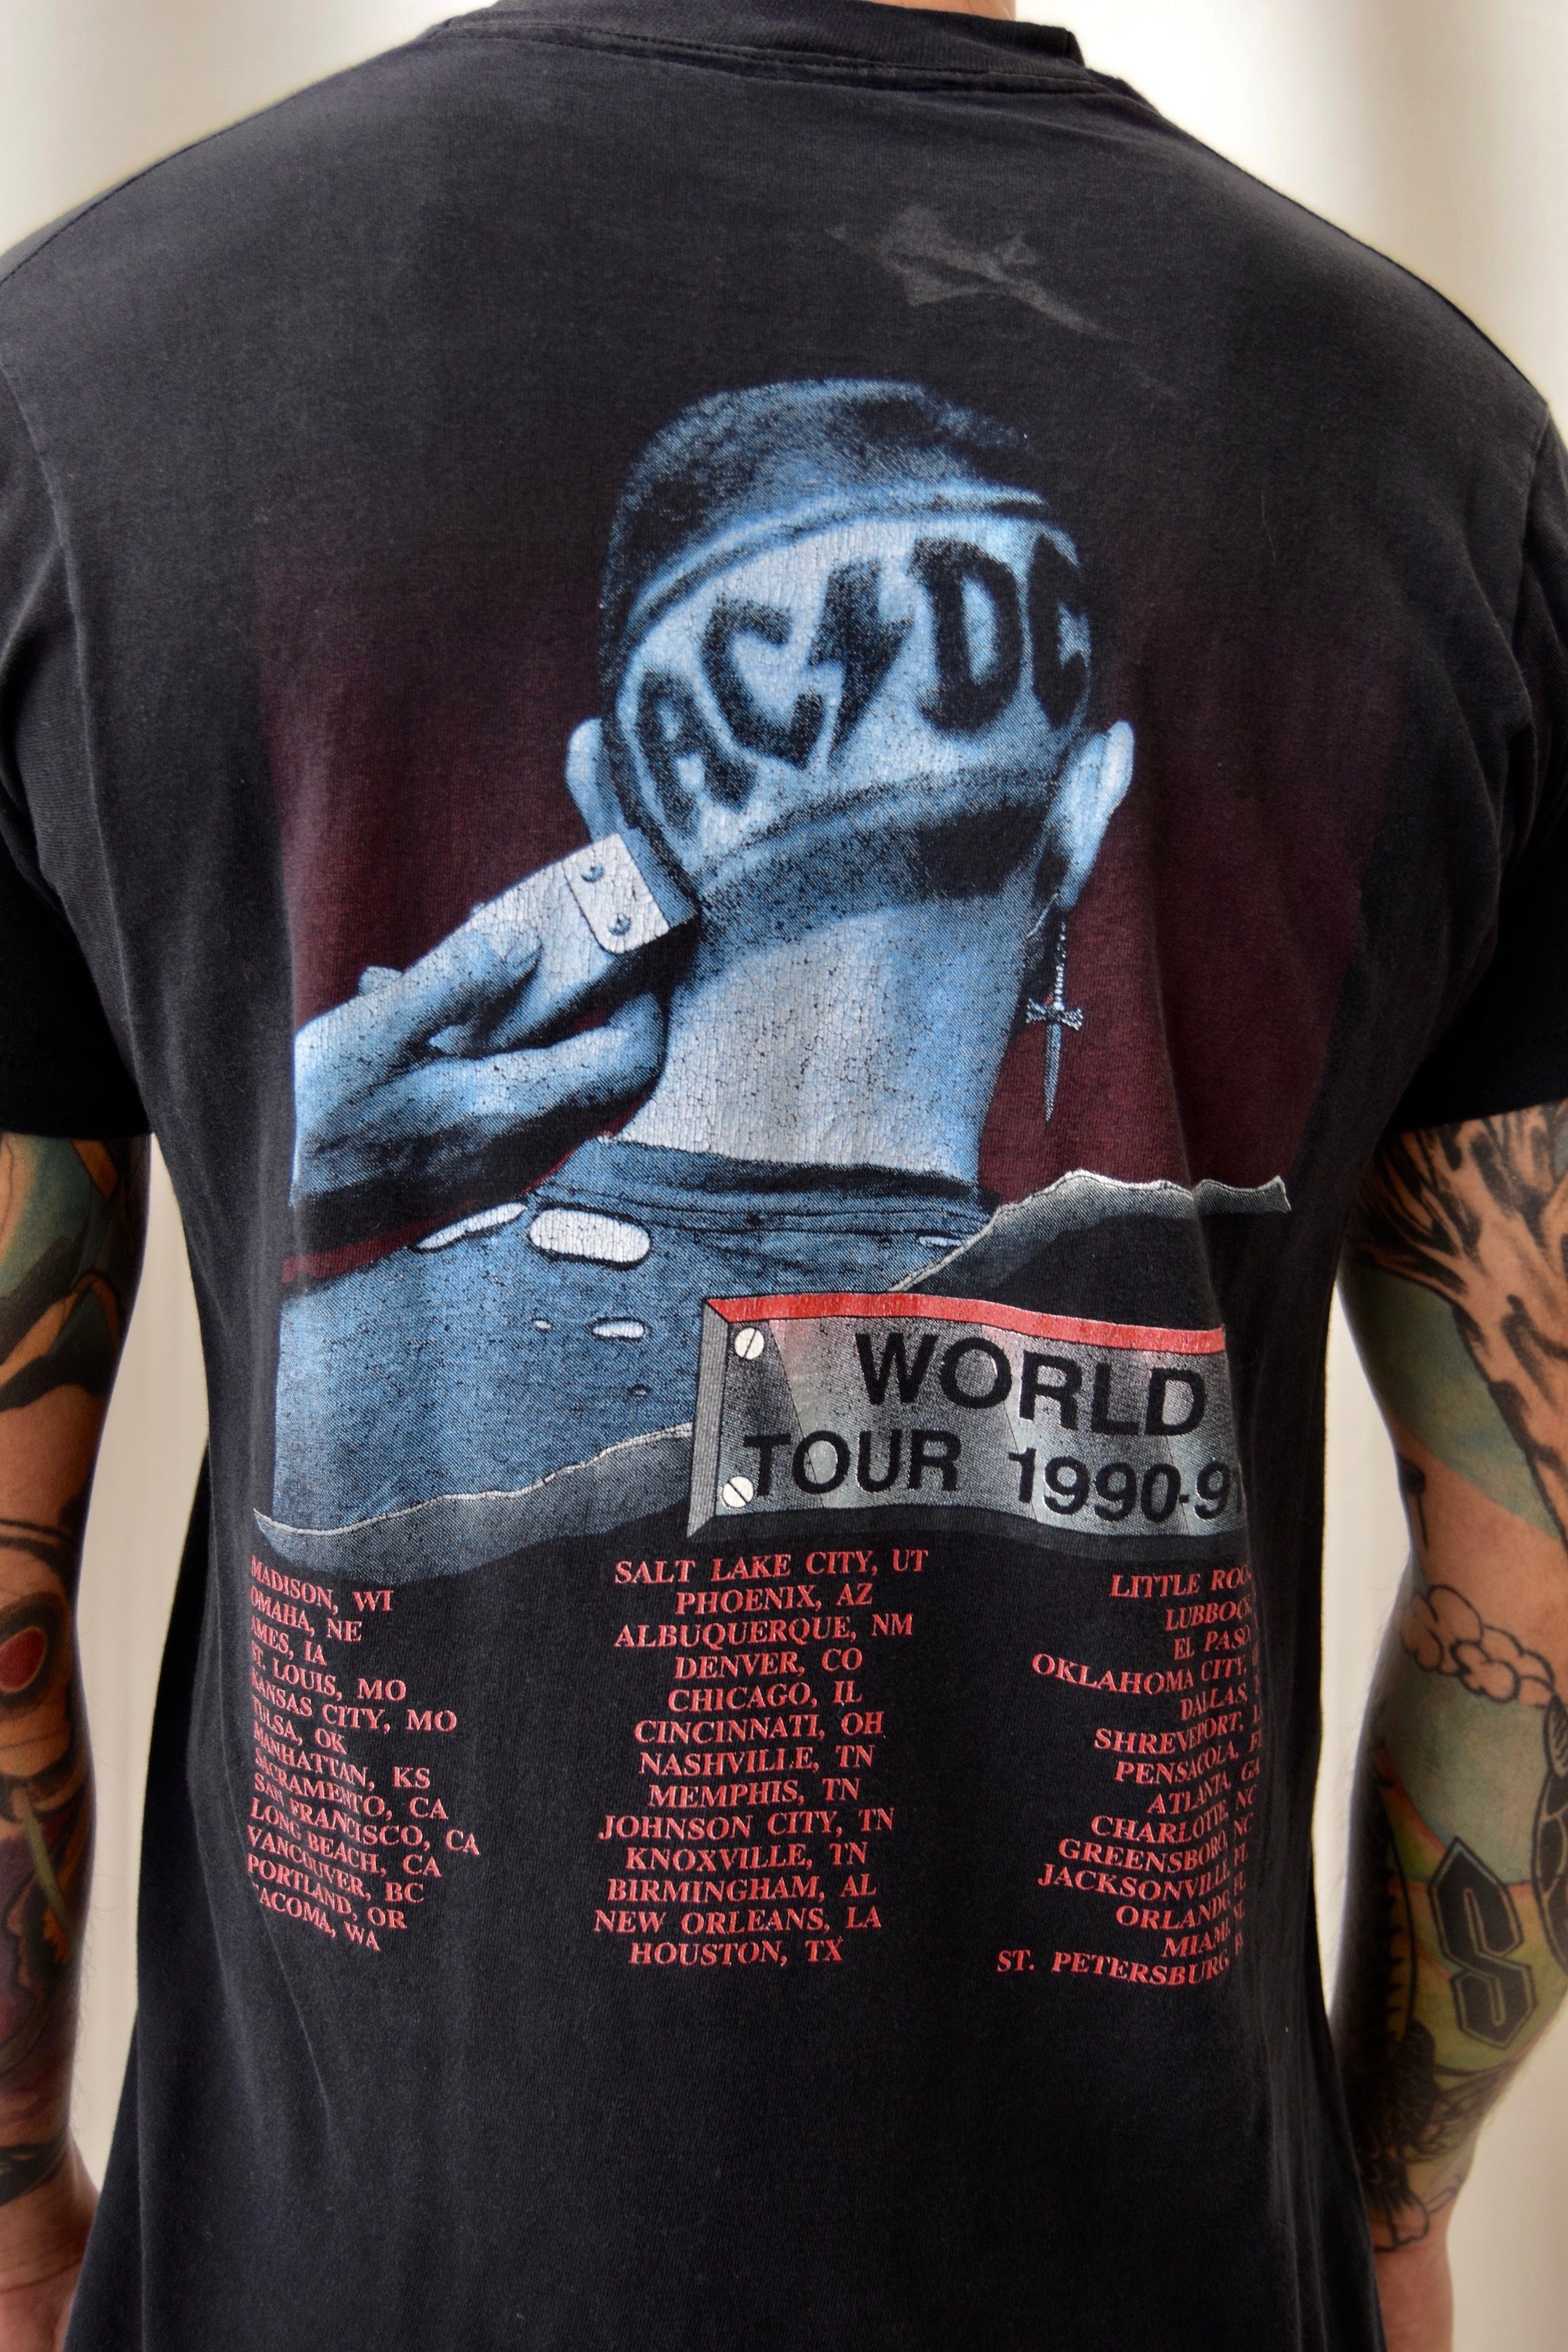 1990-1991 AC/DC "The Razors Edge" World Tour T-shirt